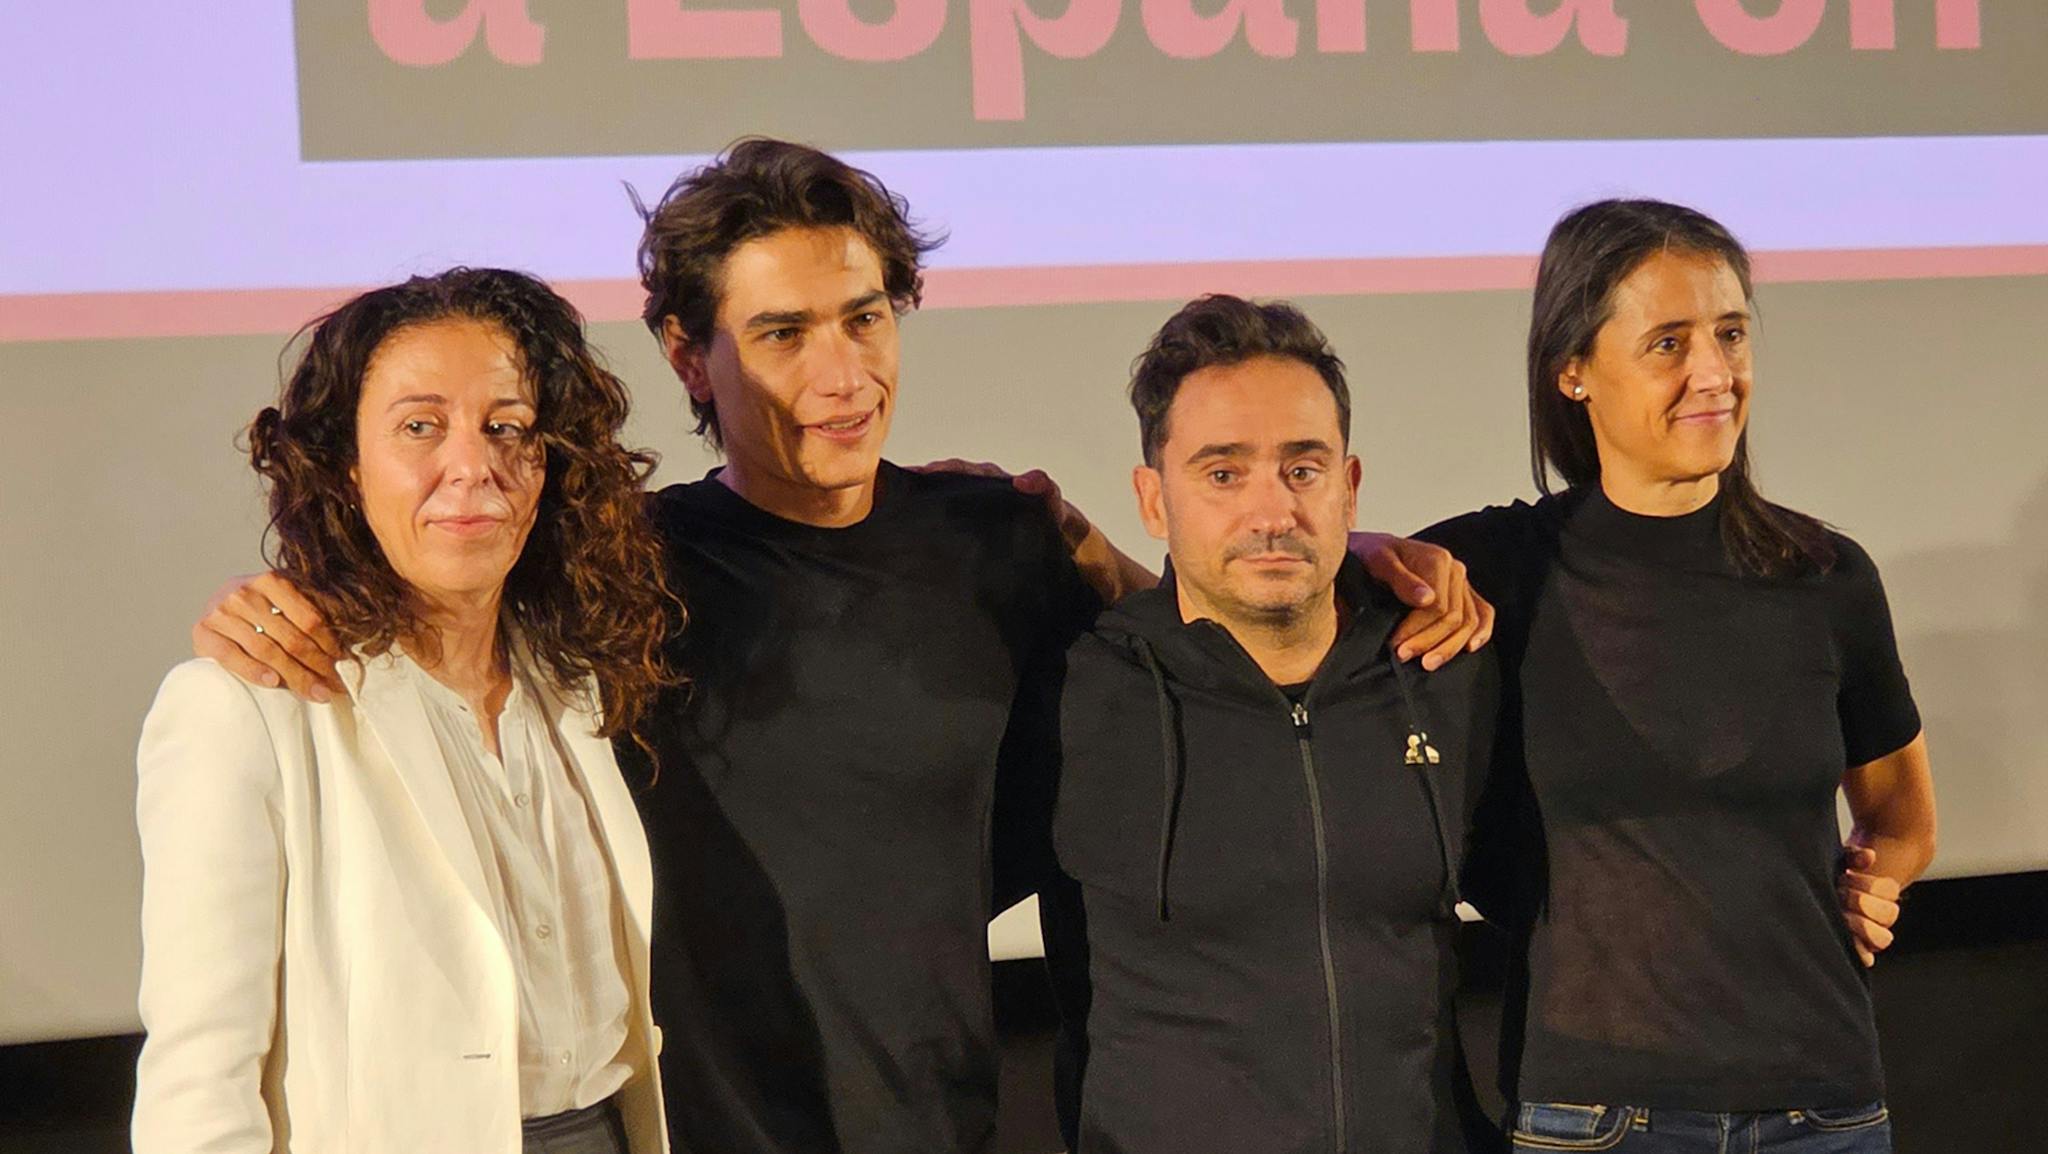 La conmovedora historia real de 'La sociedad de la nieve' de J.A. Bayona, la  candidata española para los Oscar 2024